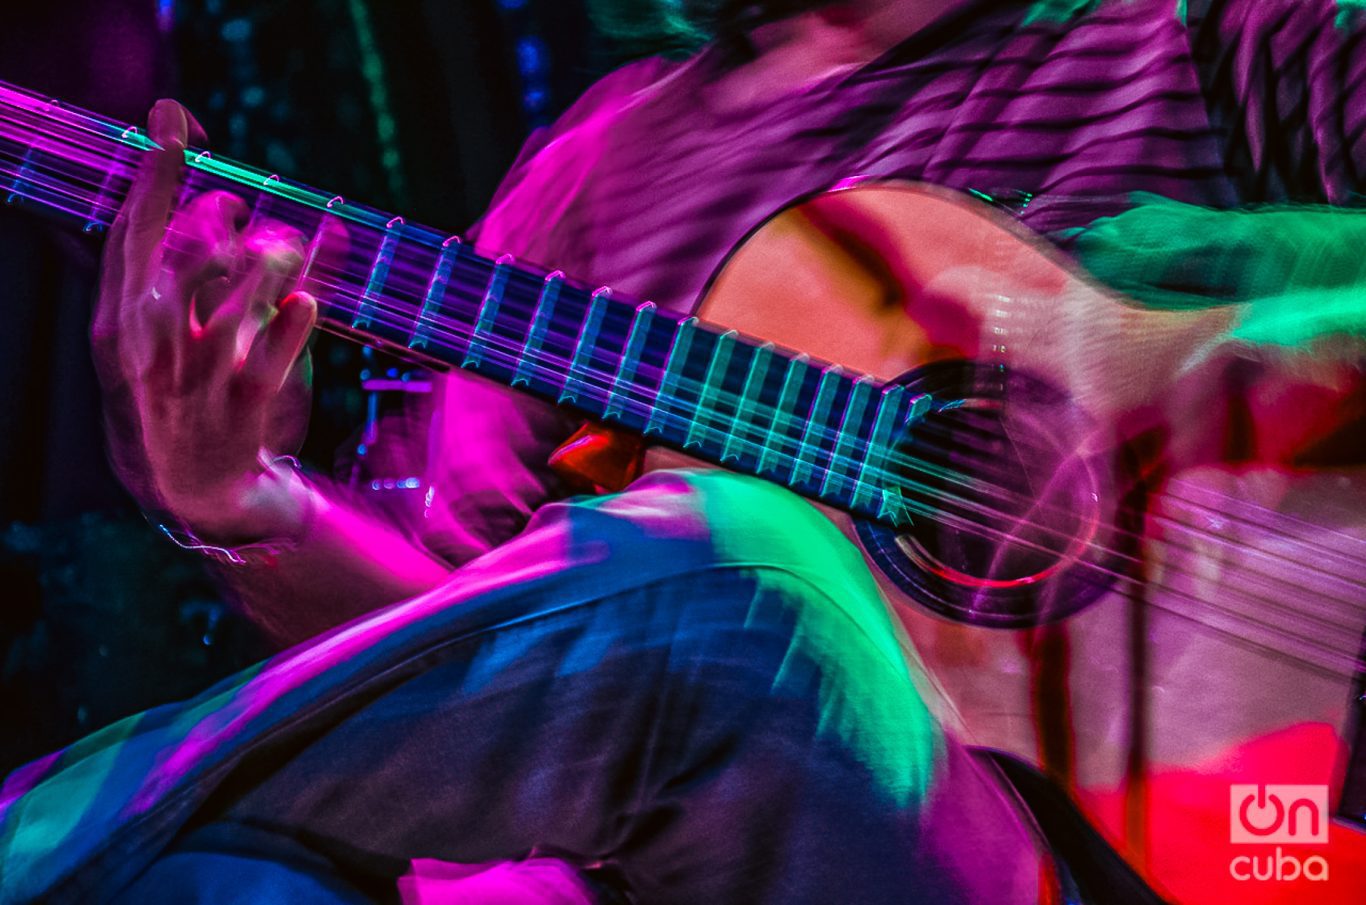 Detalle de Santiago Feliú y su manera única y magistral de tocar la guitarra. Foto: Kaloian.